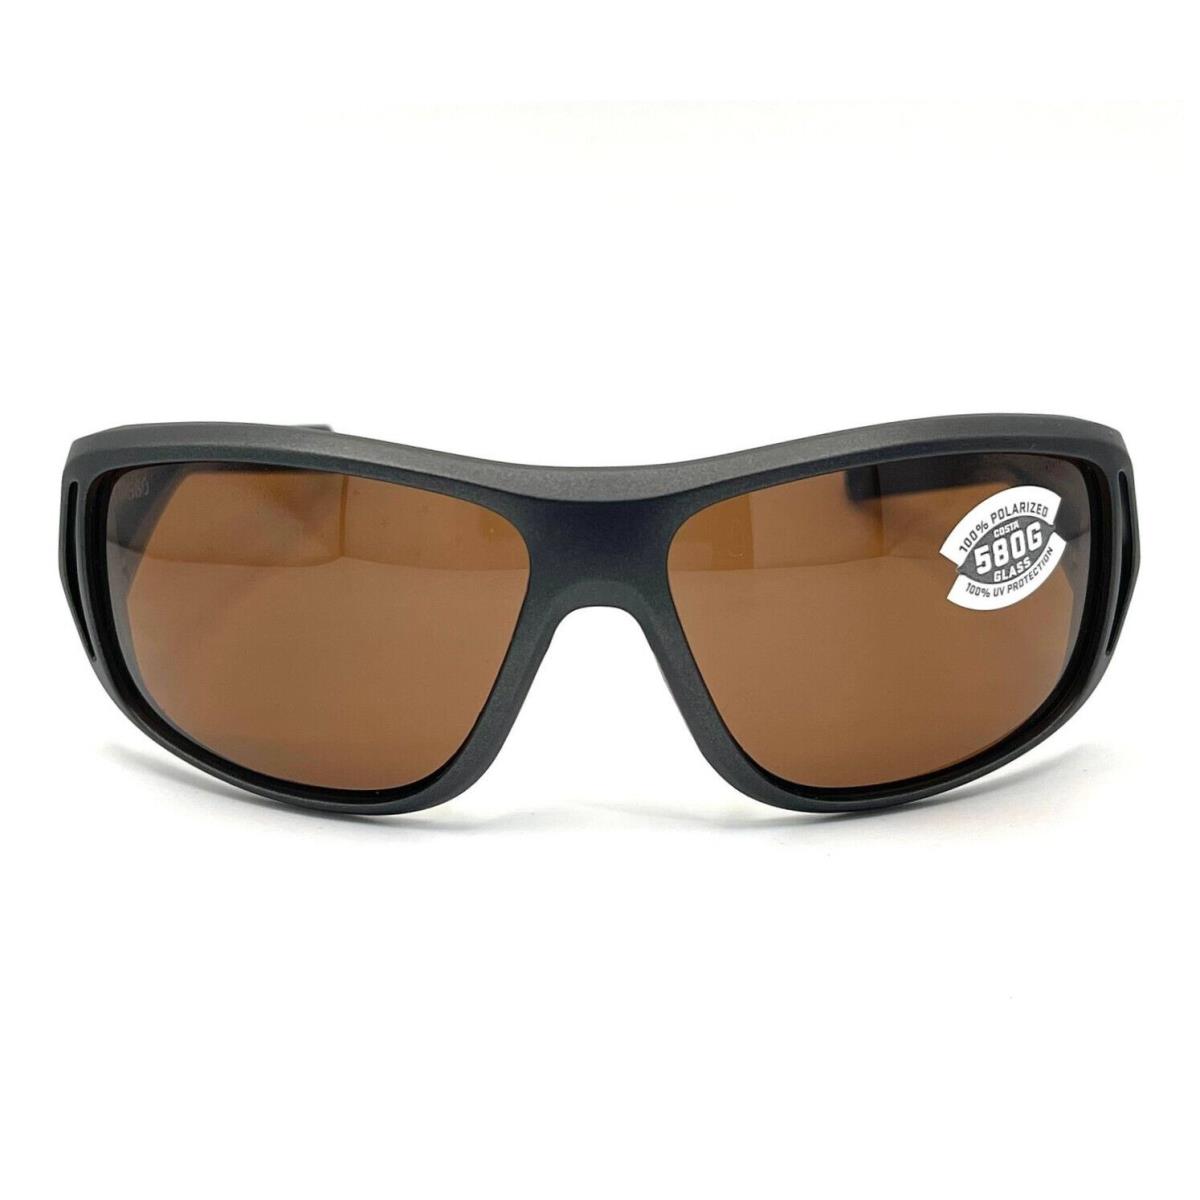 Costa Del Mar Montauk Sunglasses Steel Gray Metallic/copper 580Glass